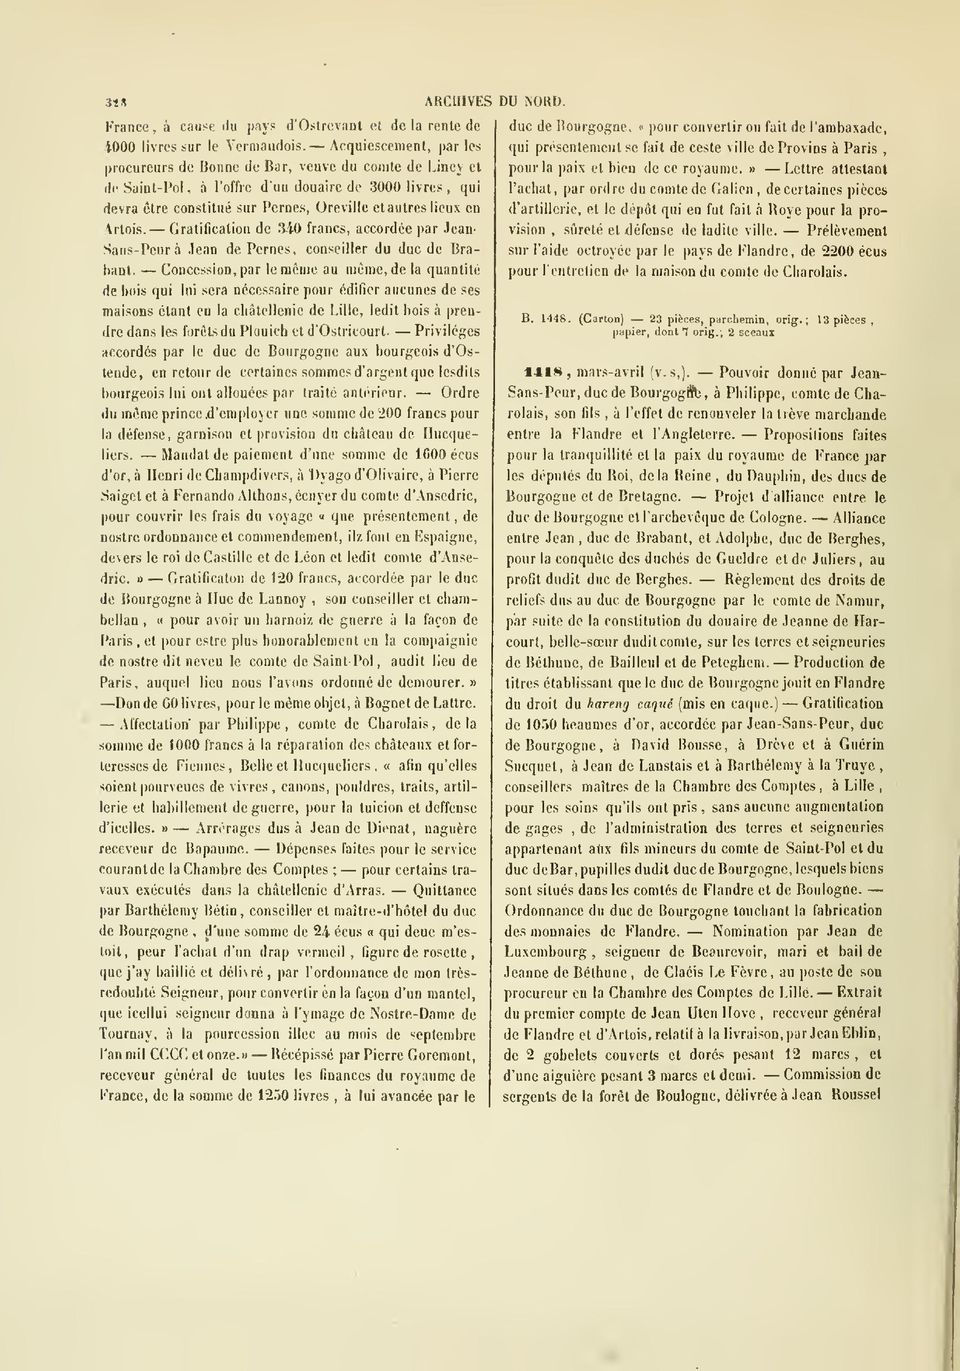 Gratification de 340 francs accordée par Jean- Sans-Peur à Jean de Pernes conseiller du duc de Brabant.